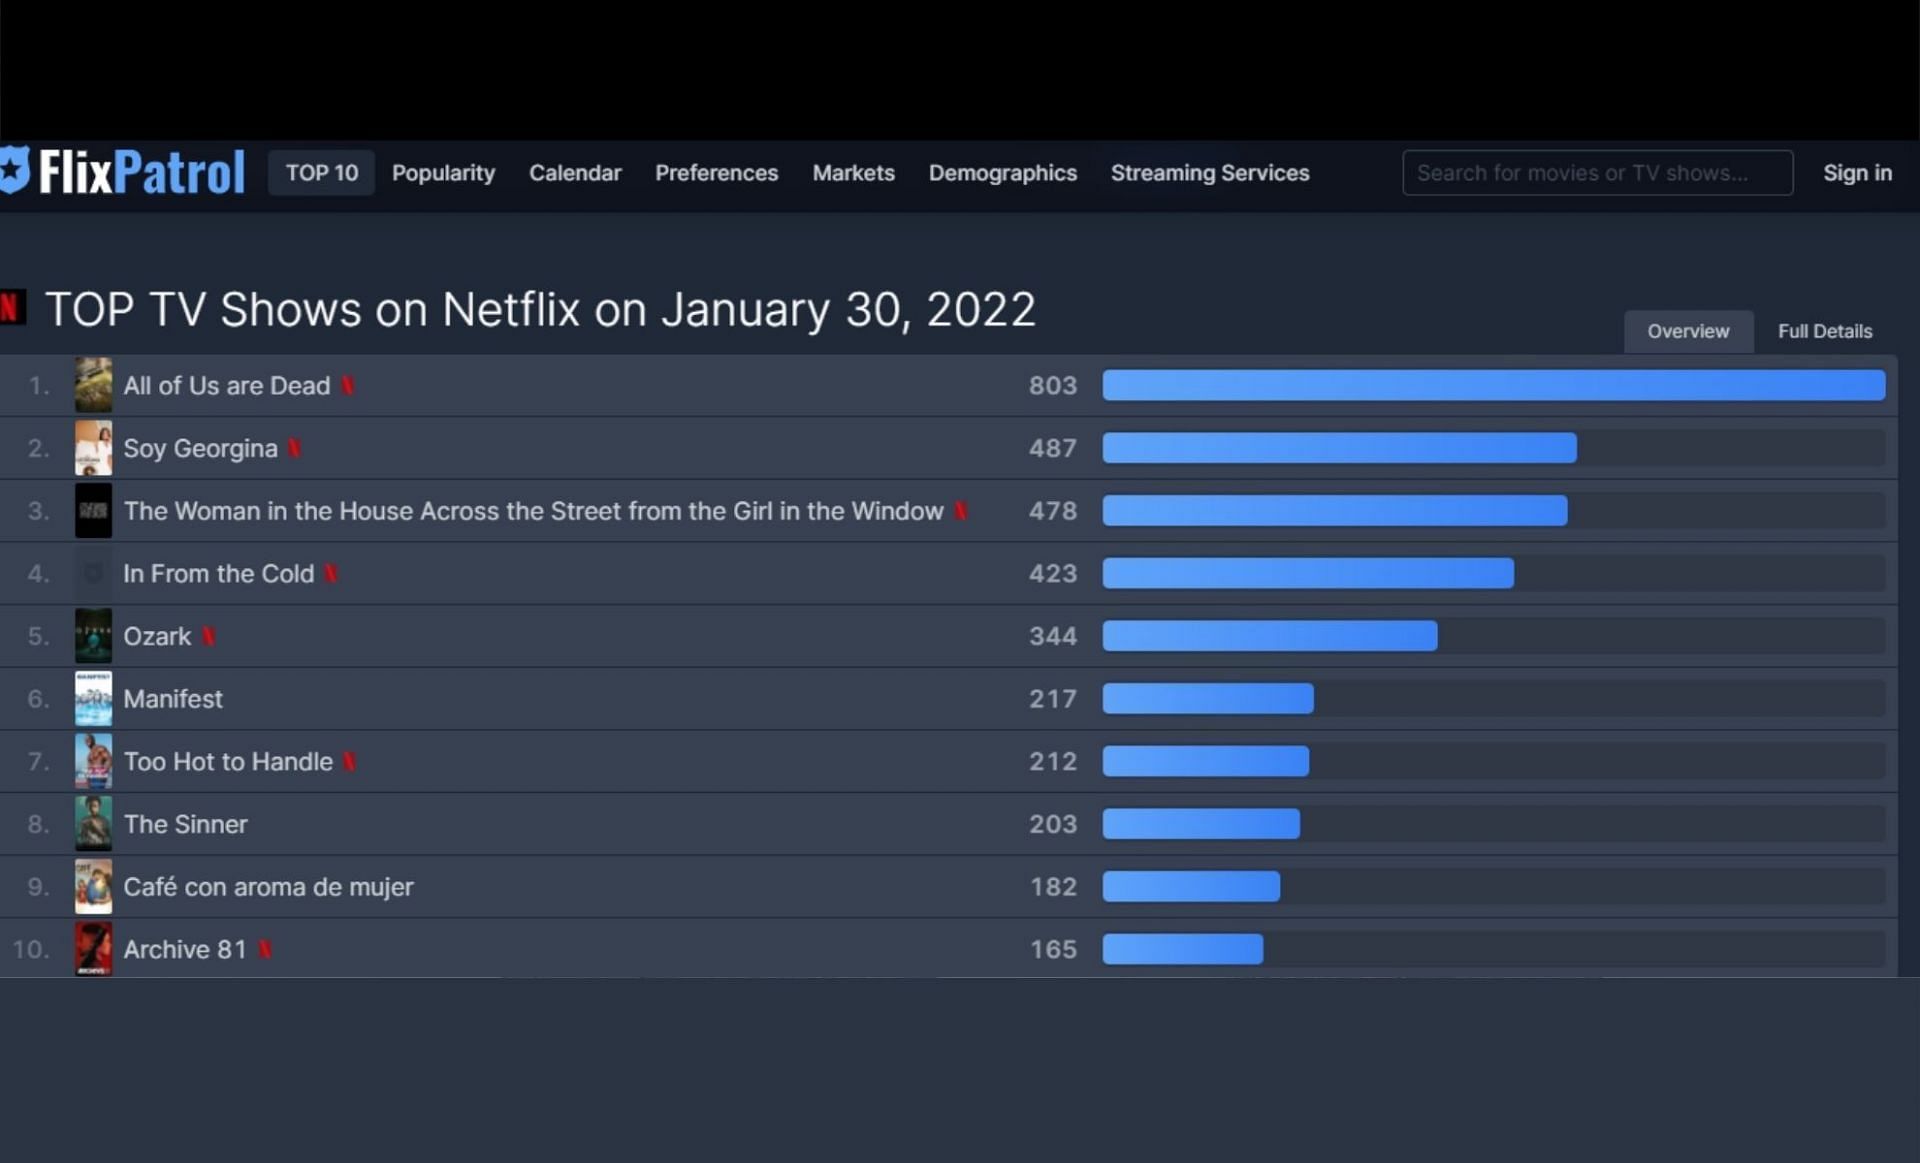 FlixPatrol Top TV Shows for January 30 (Screenshot via FLixPatrol website)